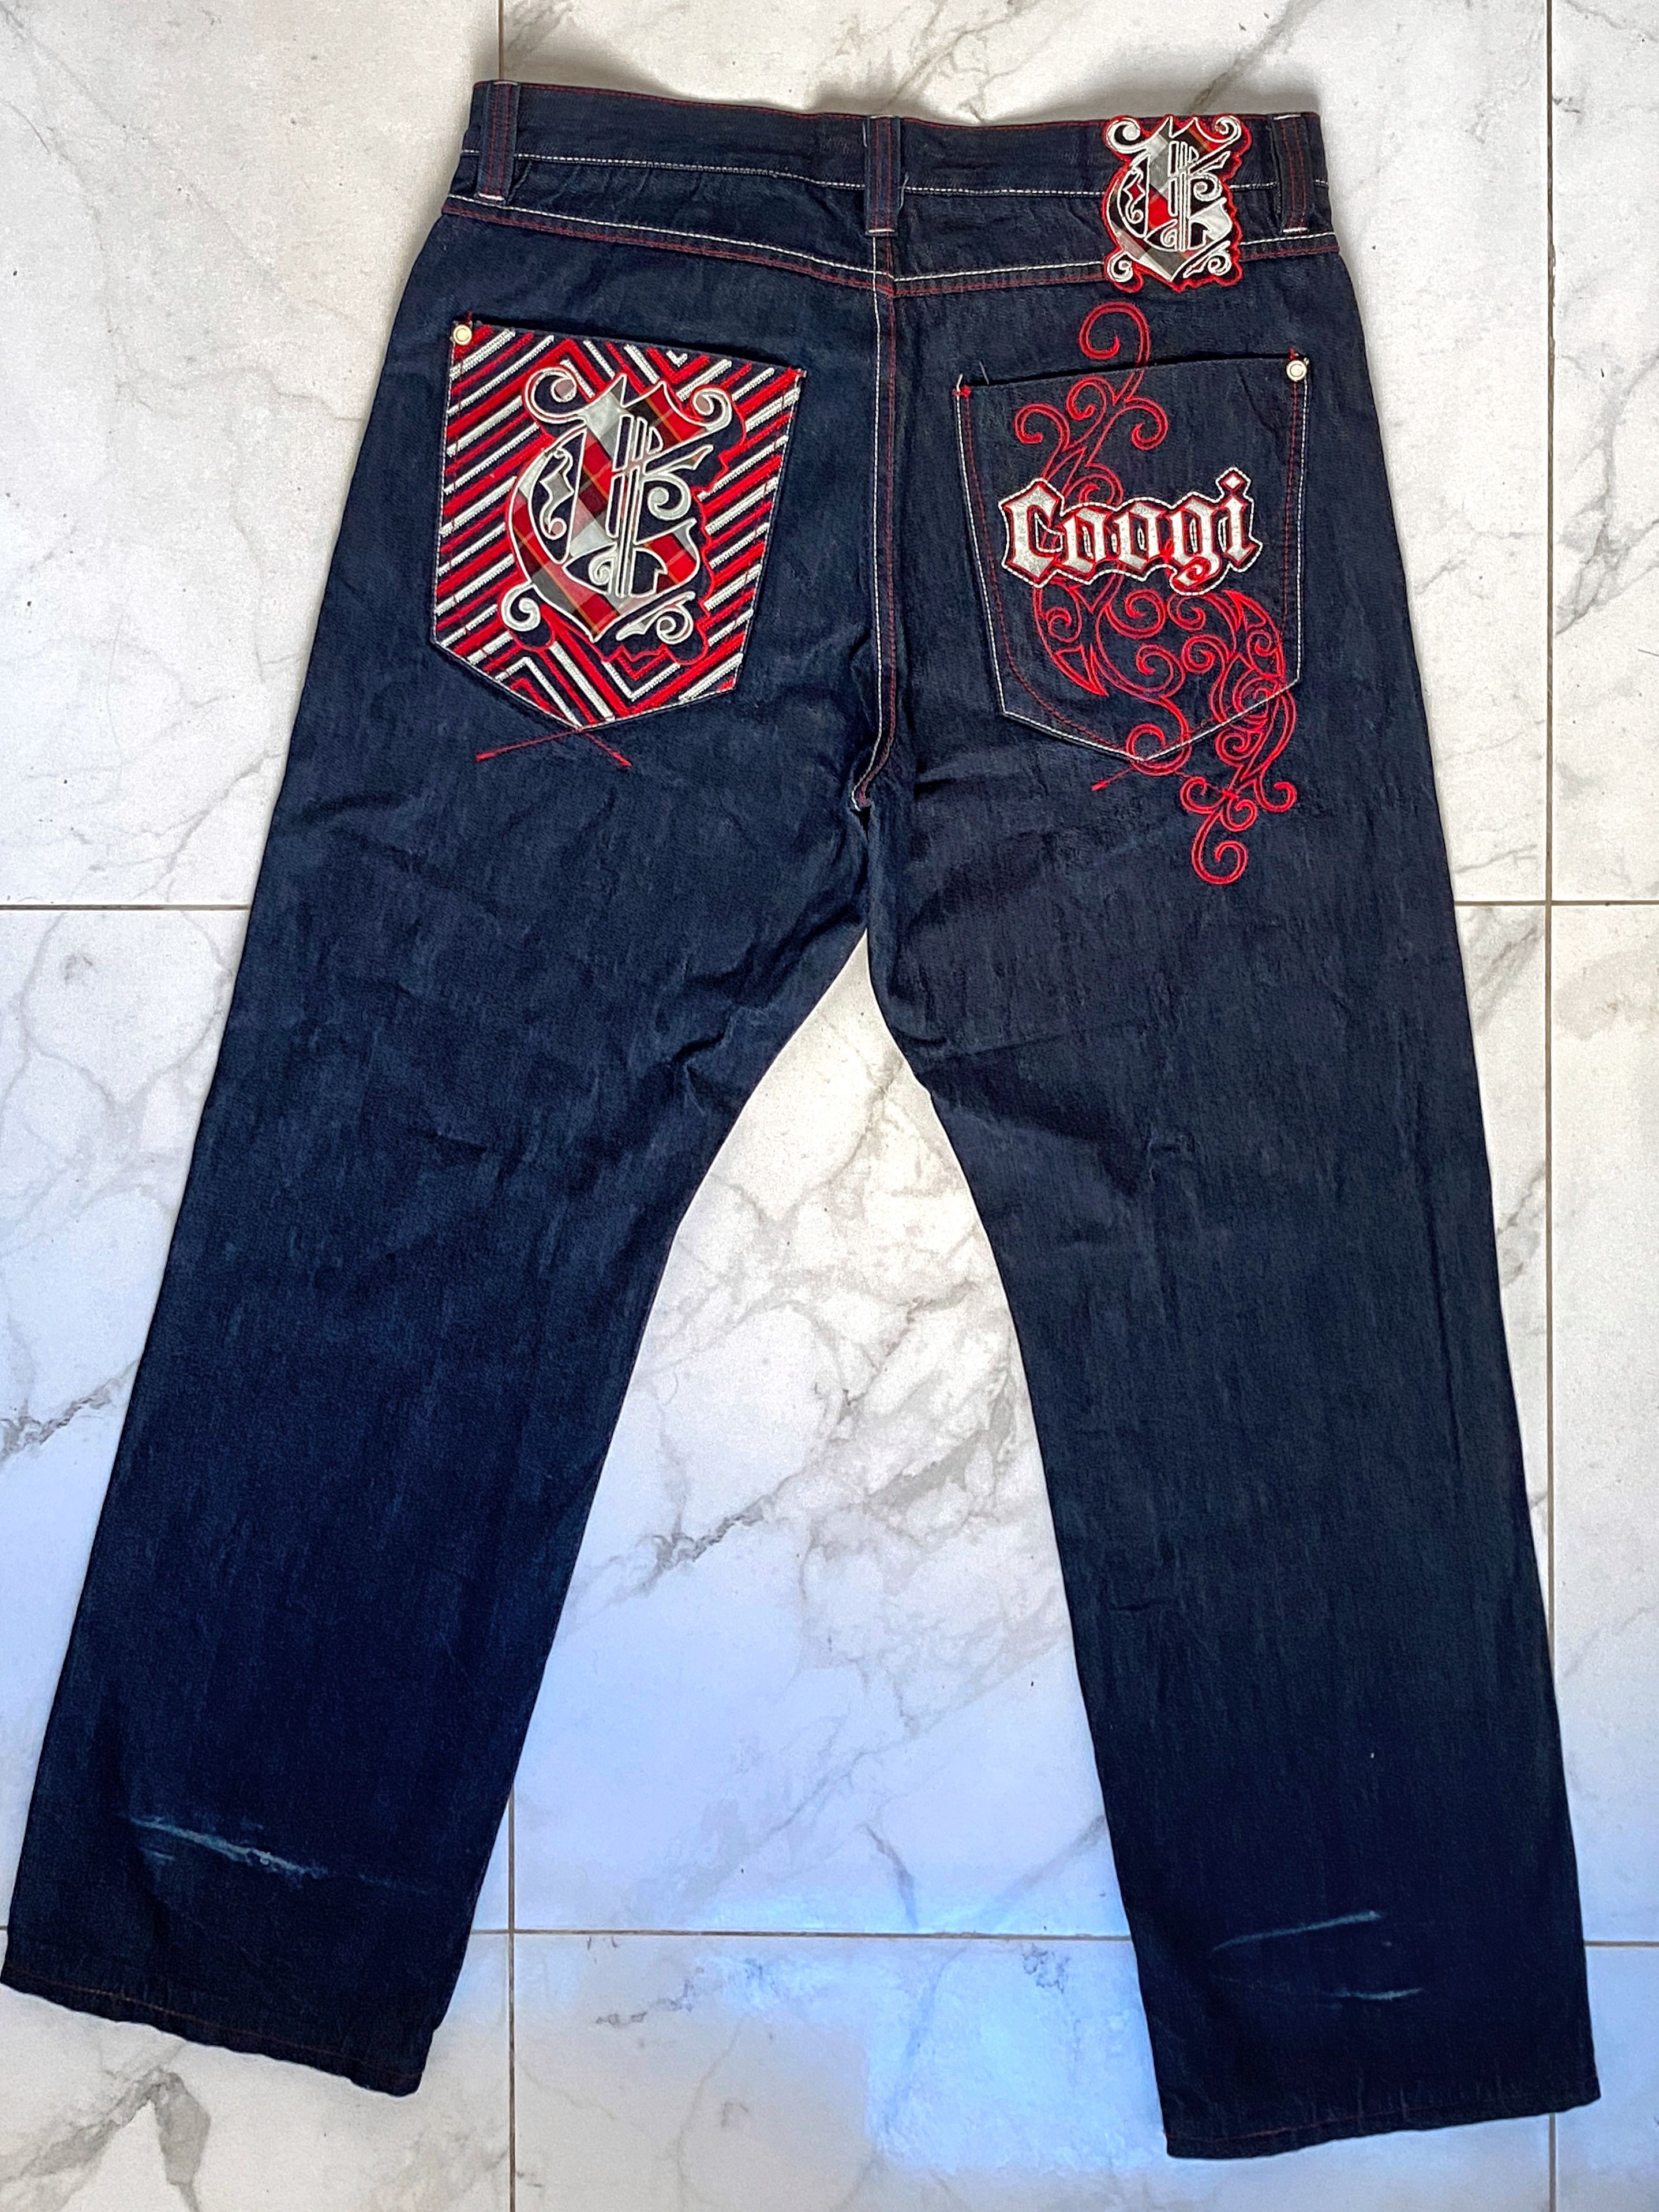 Coogi Coogi vintage blue jeans RN111642 | Grailed